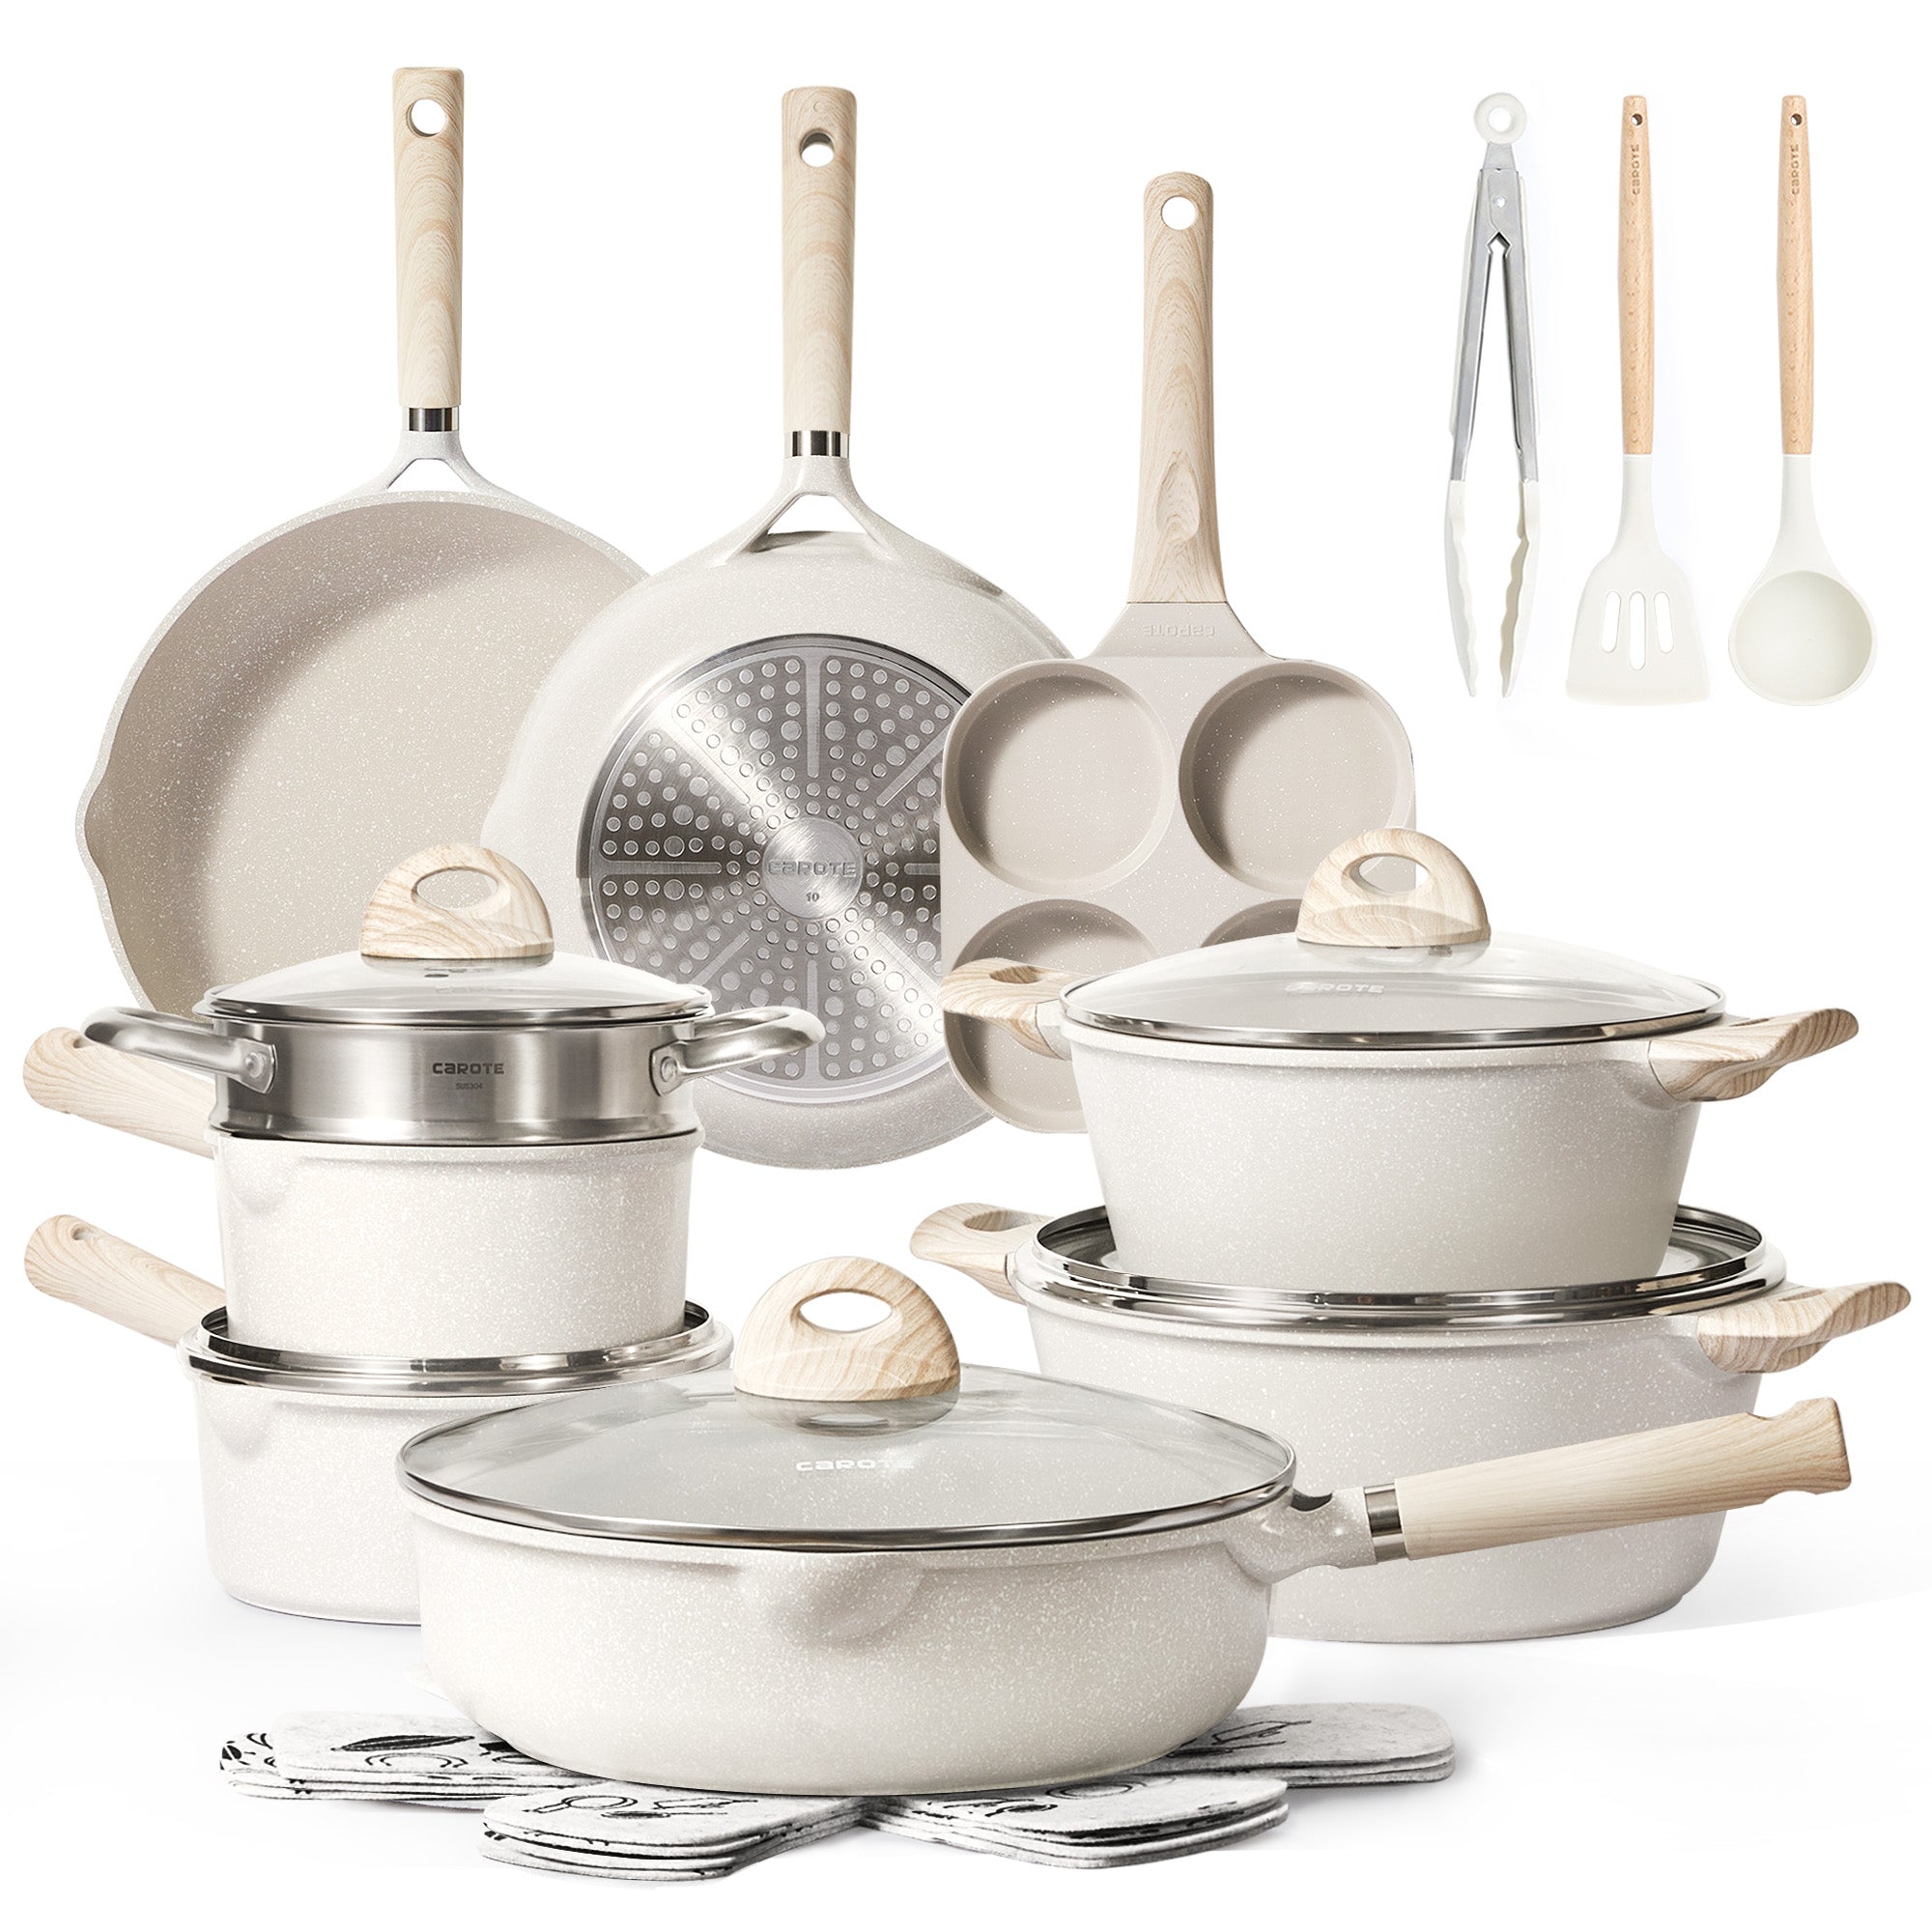 CAROTE 21pcs Pots and Pans Set, Nonstick Cookware Set Detachable